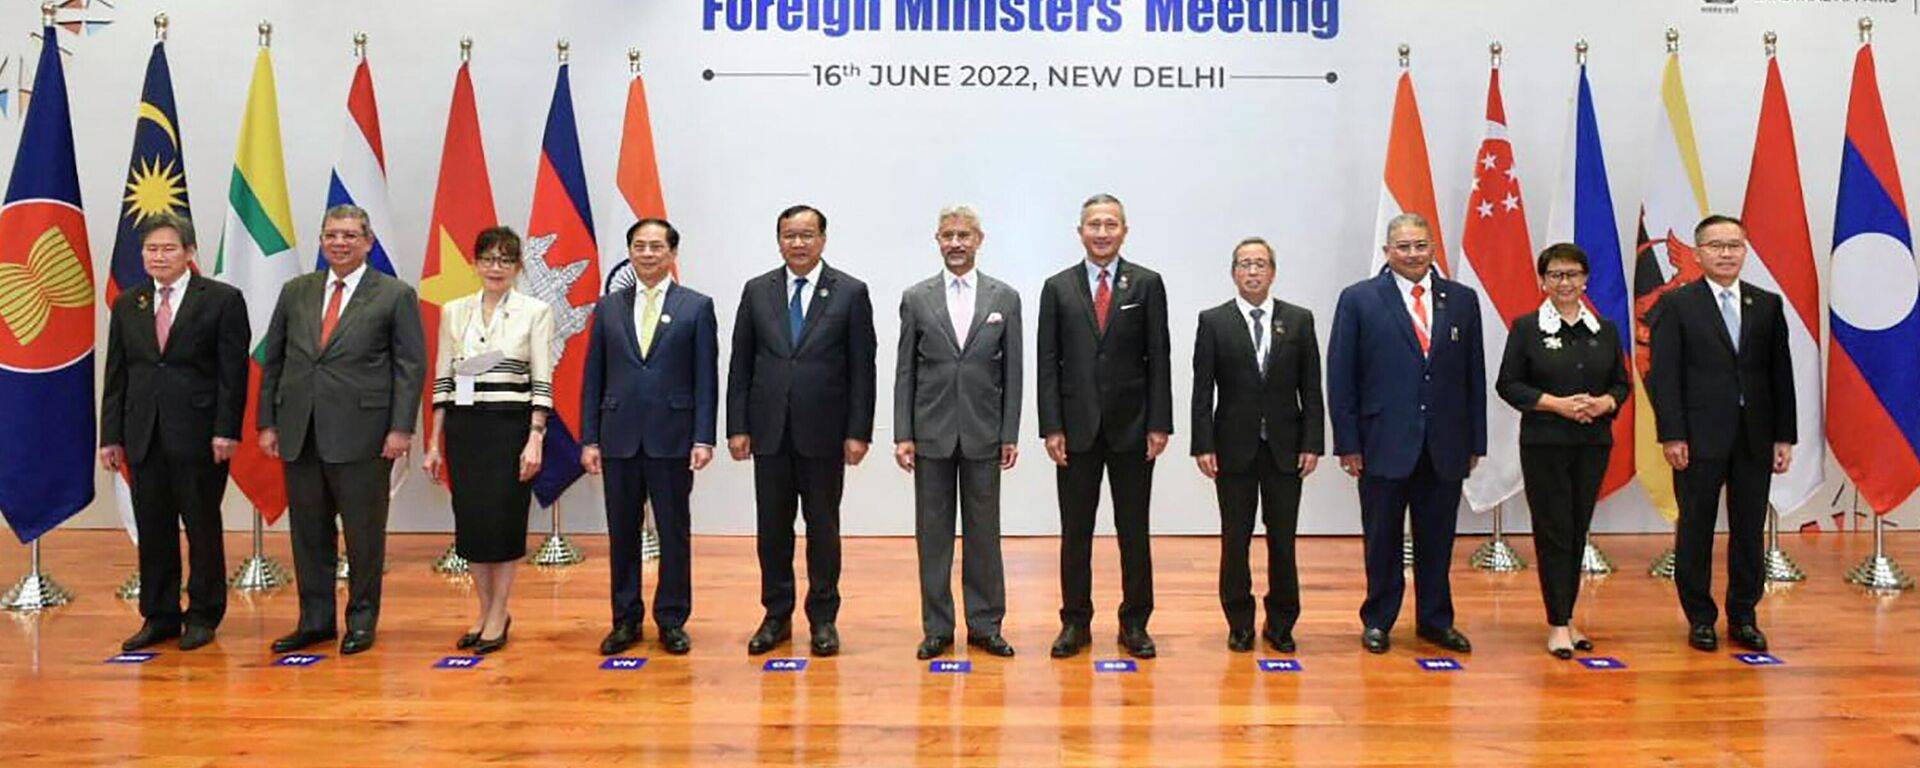 Hội nghị Bộ trưởng Ngoại giao Ấn Độ và các nước ASEAN tại New Delhi, Ấn Độ - Sputnik Việt Nam, 1920, 17.06.2022